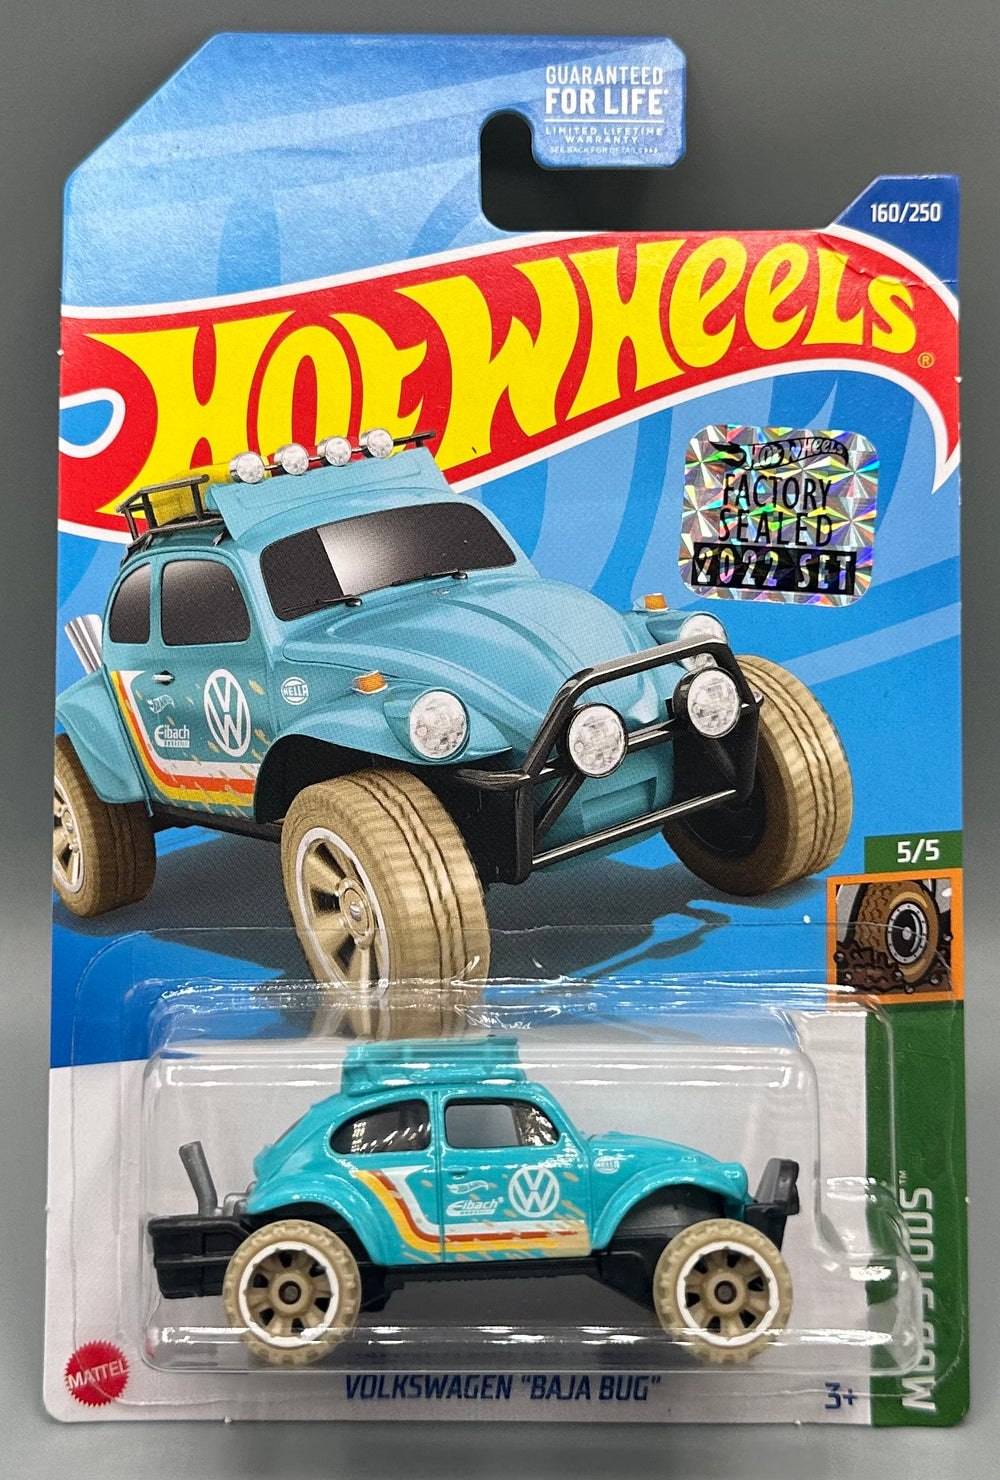 Hot wheels VW Volkswagen 